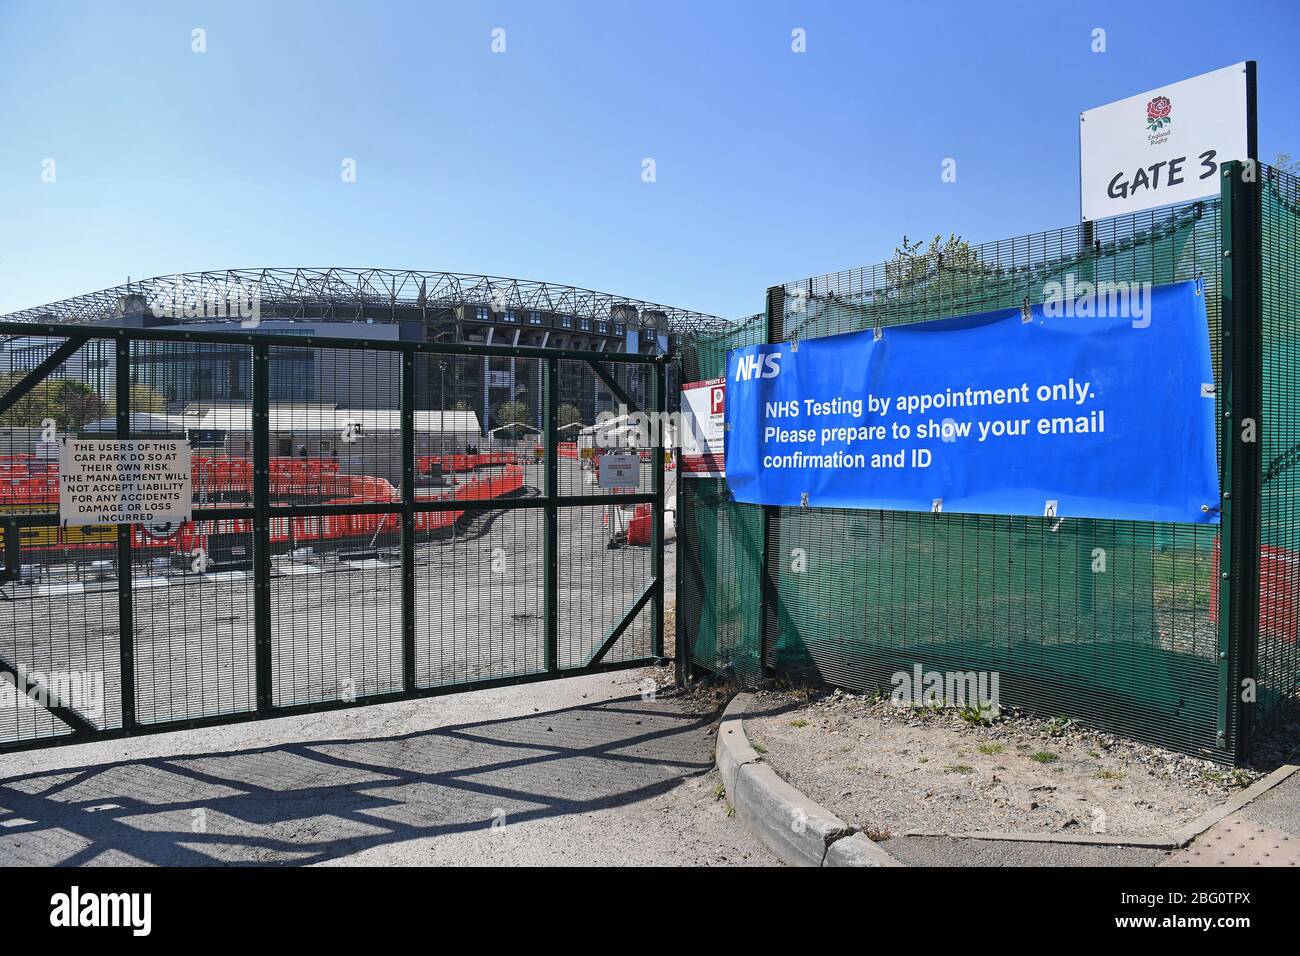 Il lavoro continua presso un centro di test per il coronavirus che si aprirà allo stadio Twickenham, nel sud-ovest di Londra, come parte dell'unità del governo a livello britannico per aumentare i test per migliaia di altri operatori NHS e altri lavoratori chiave. Foto Stock